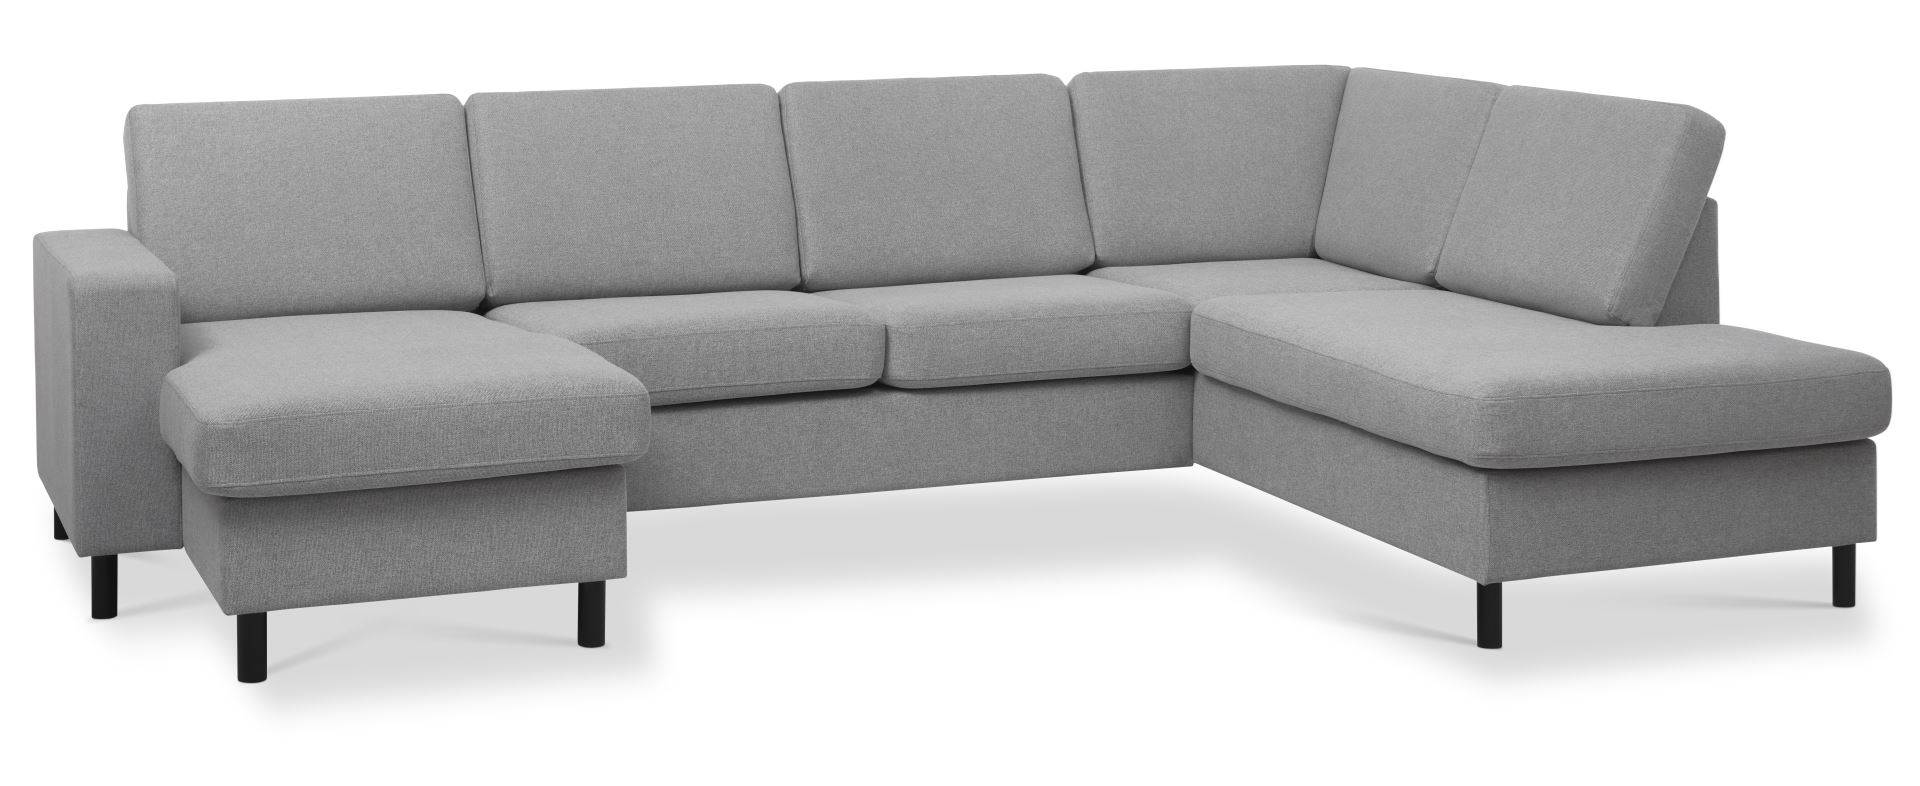 Pan set 5 U OE right sofa med chaiselong - grå polyester stof og sort træ